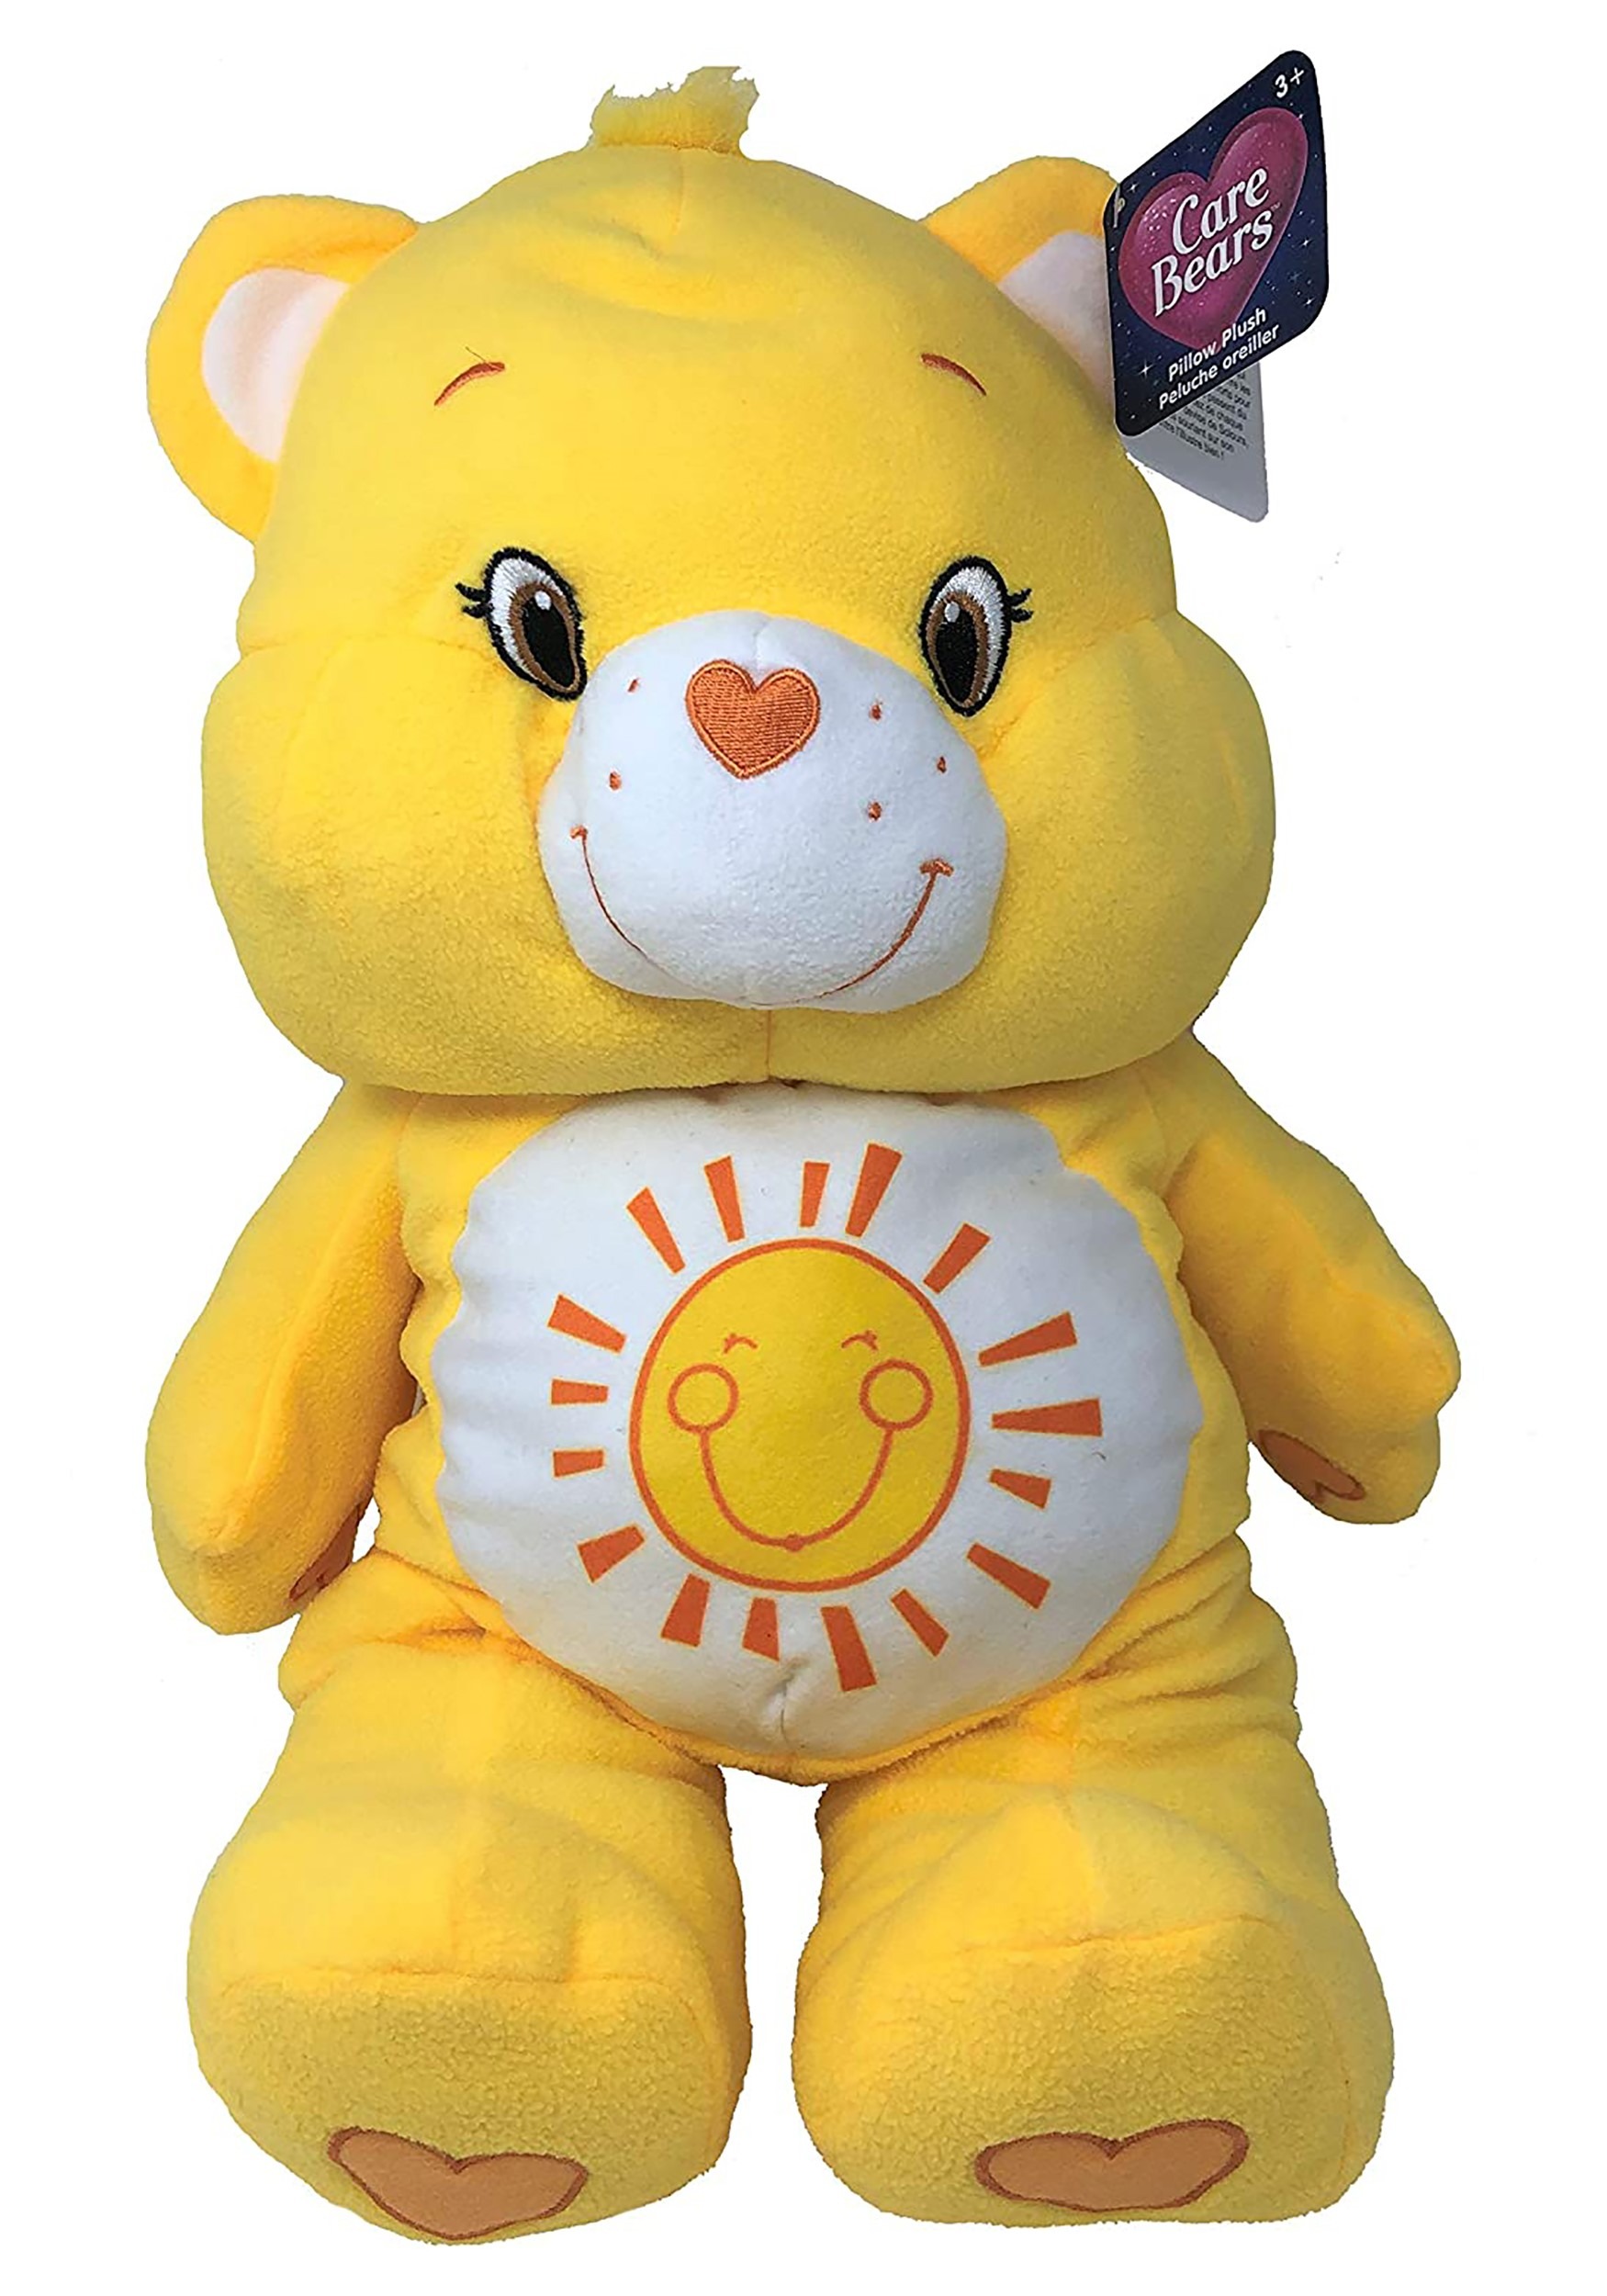 sunshine care bear